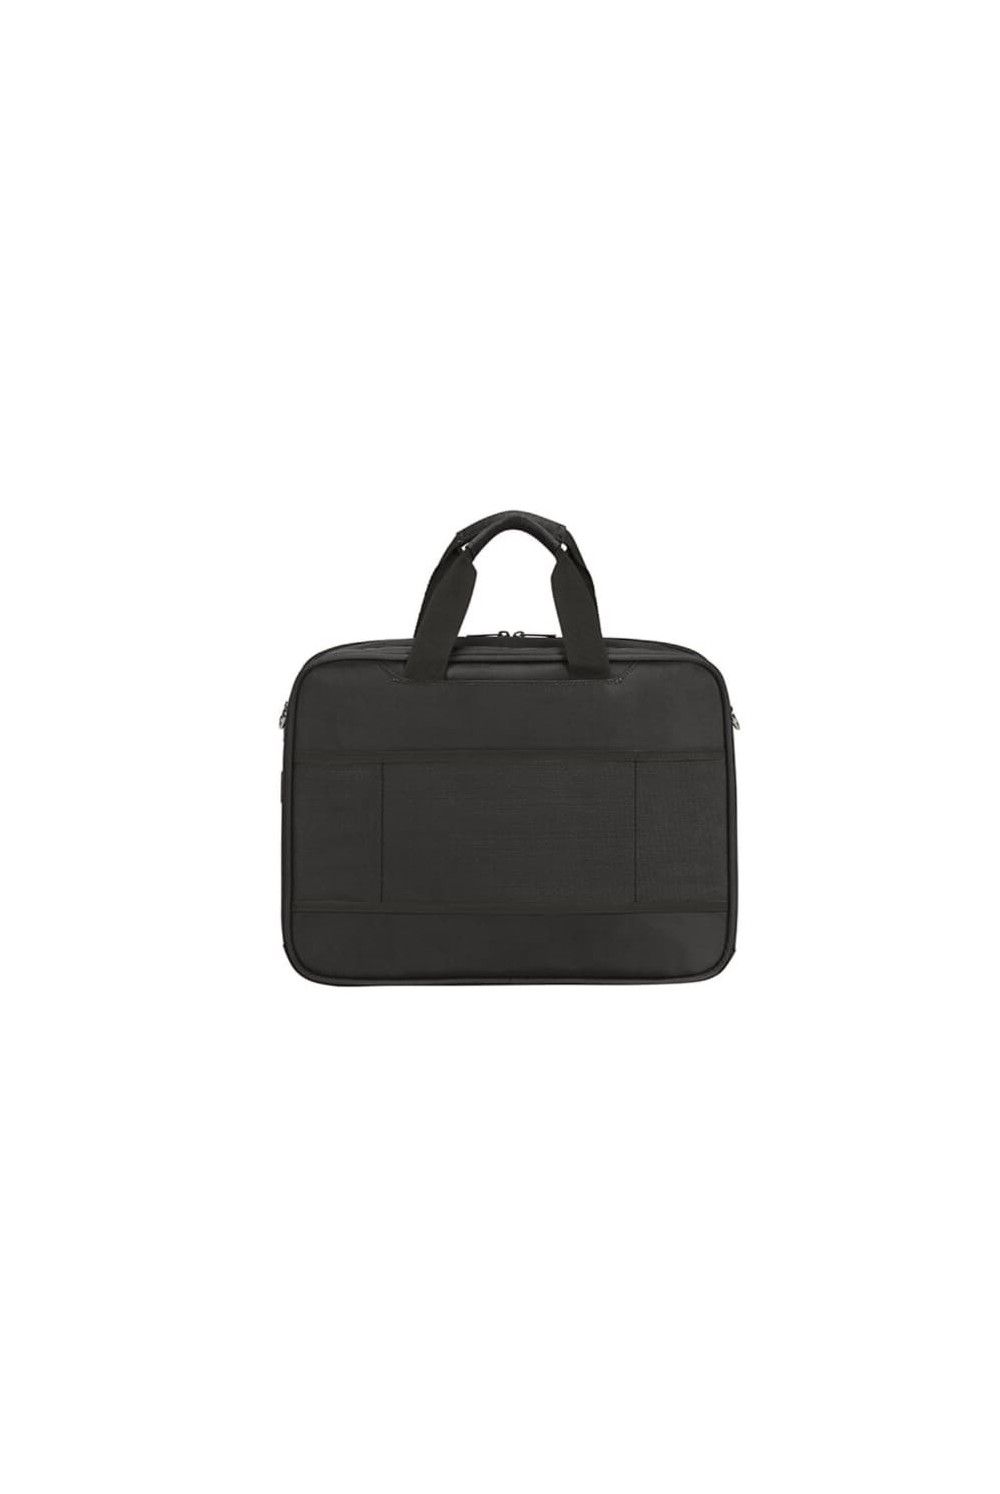 Samsonite Vectura Evo briefcase 15.6 inches 18L